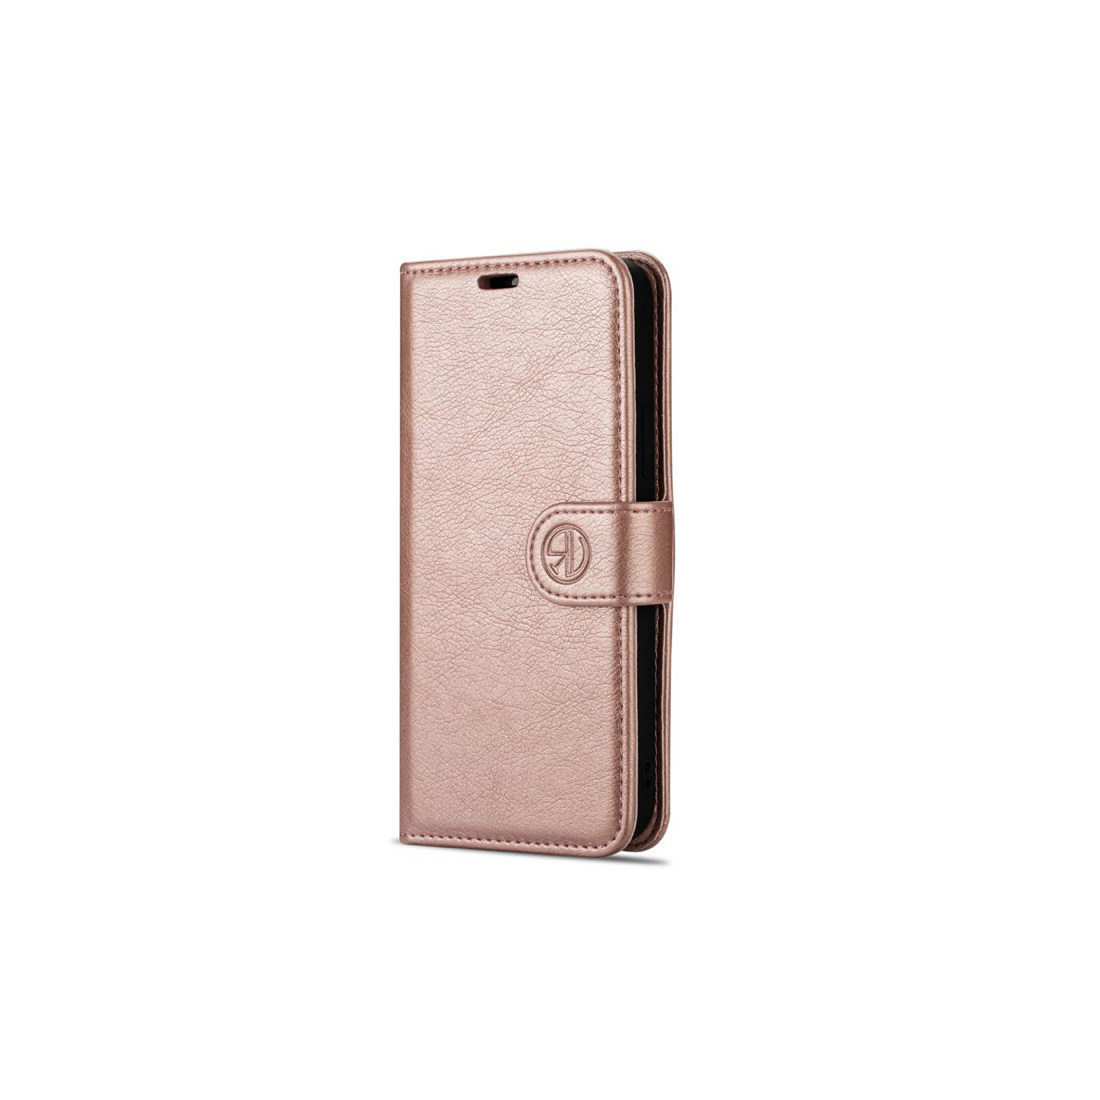 Augment leeg geweld Apple iPhone 11 Pro Max kunstleer Rosé goud Book Case Telefoonhoesje